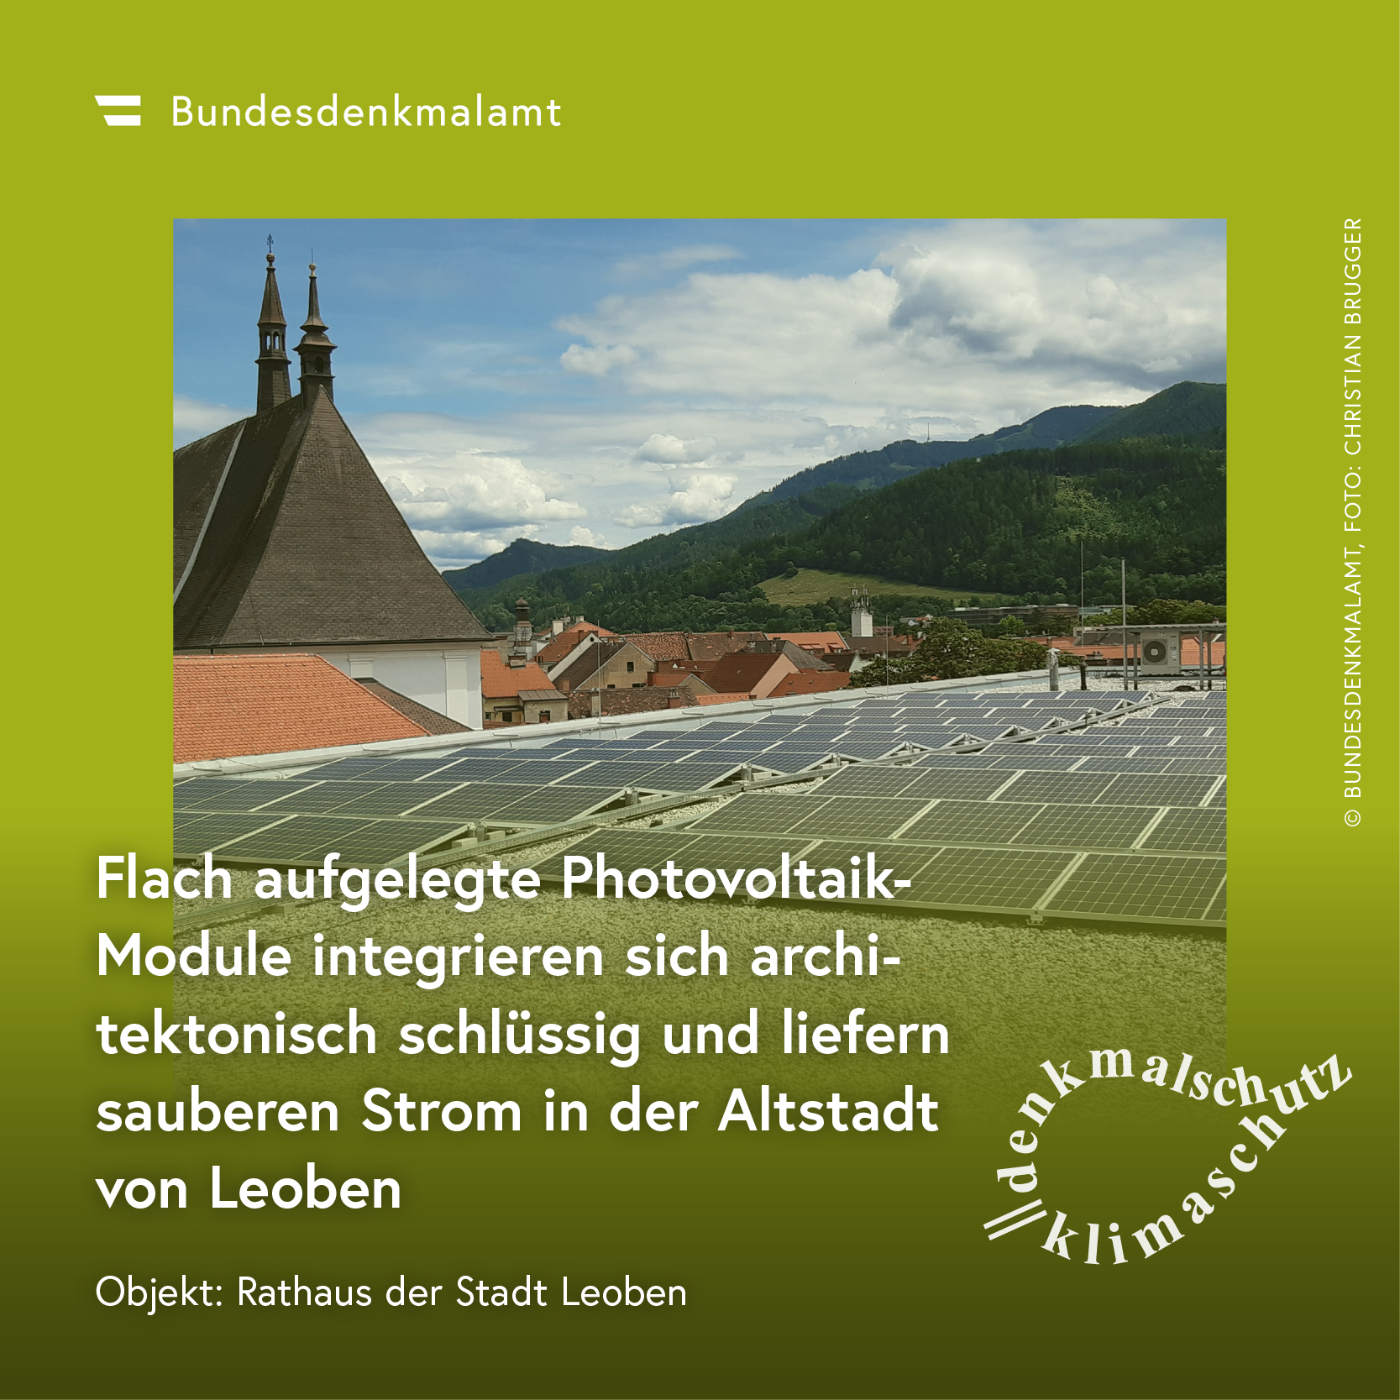 Sujet der Kampagne "Denkmalschutz ist Klimaschutz" - Rathaus der Stadt Leoben (Steiermark)